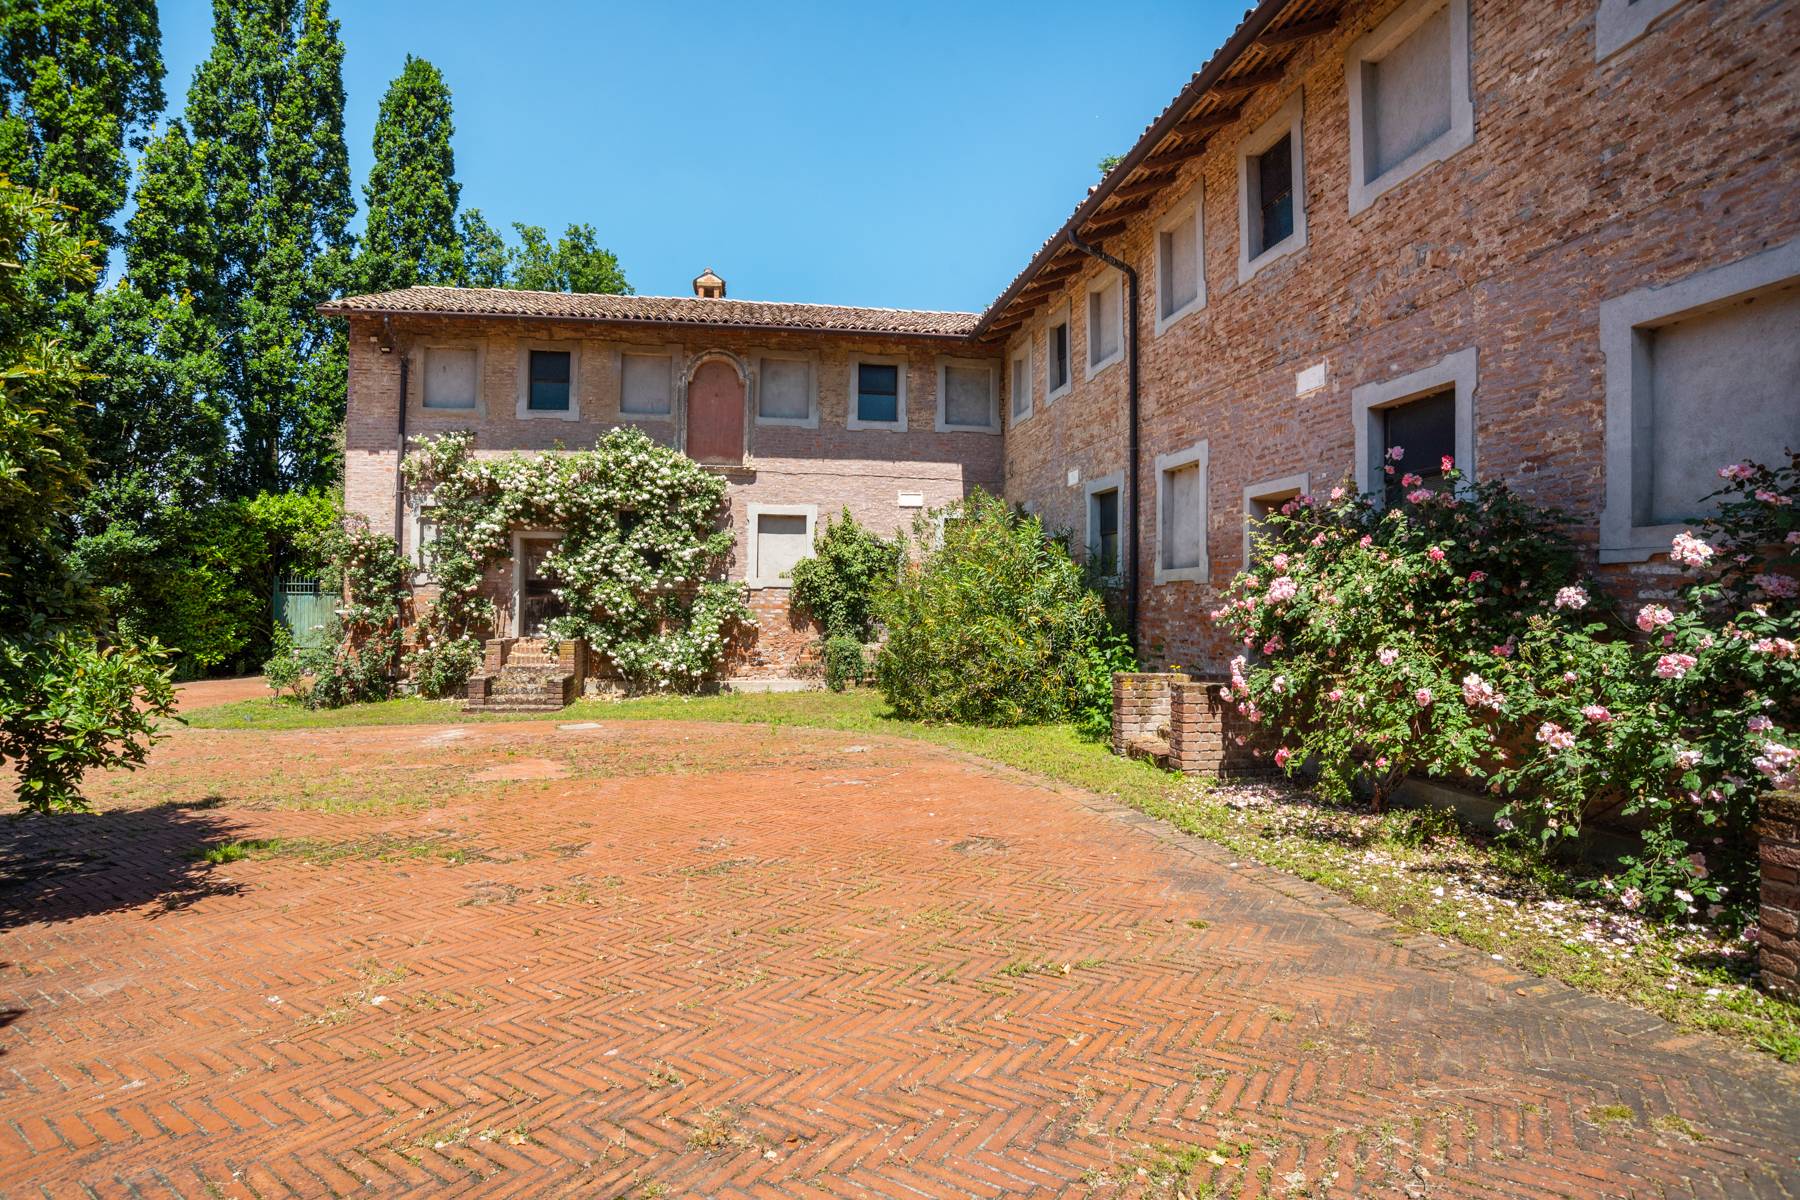 Villa in Vendita a Pavia: 5 locali, 1919 mq - Foto 9